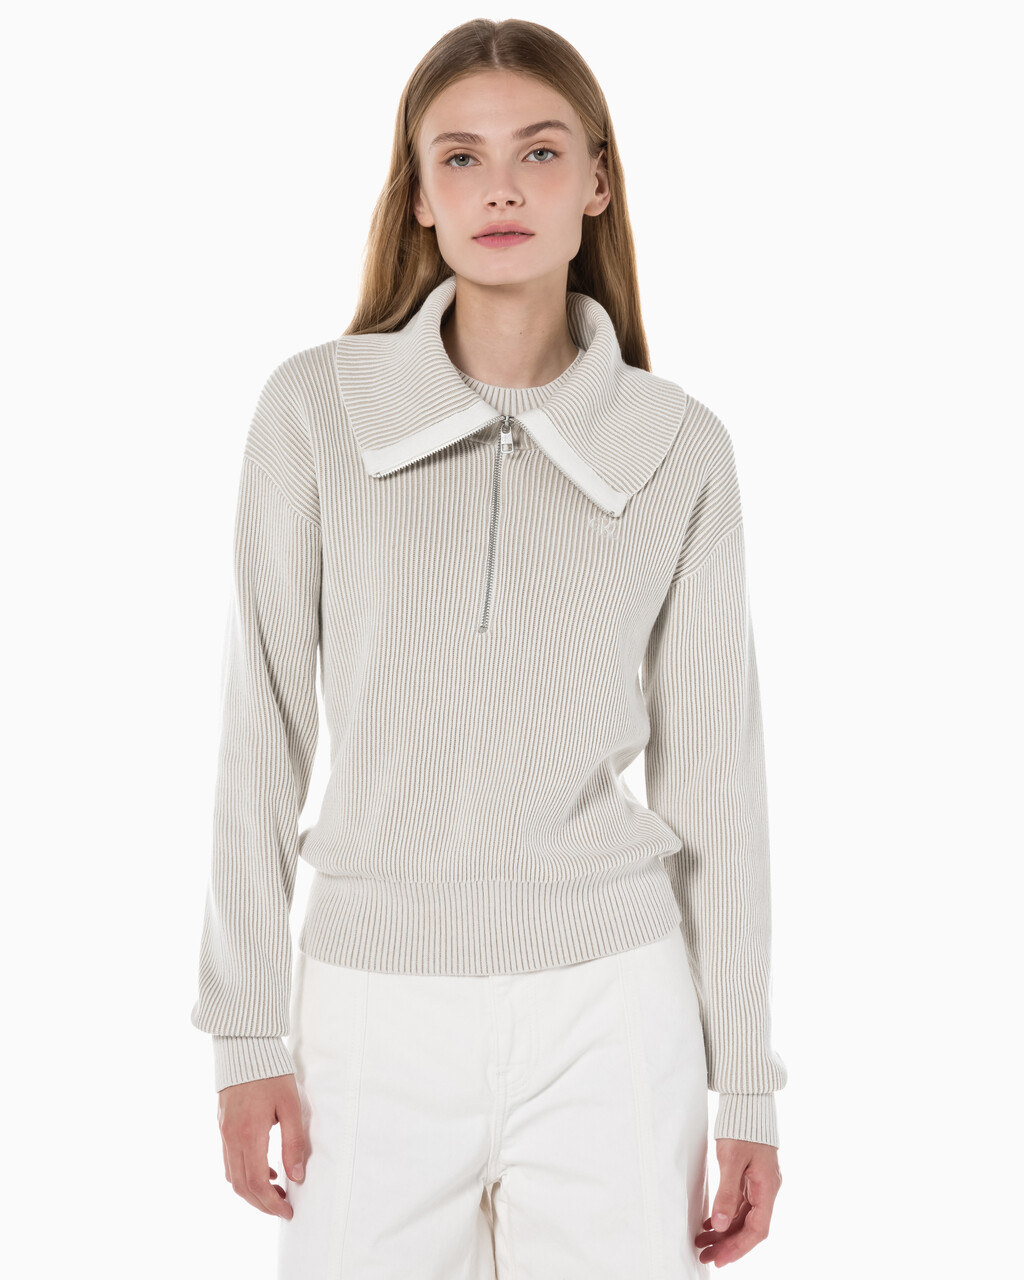 Buy 여성 하프집업 와이드 카라 스웨터 in color WHITE